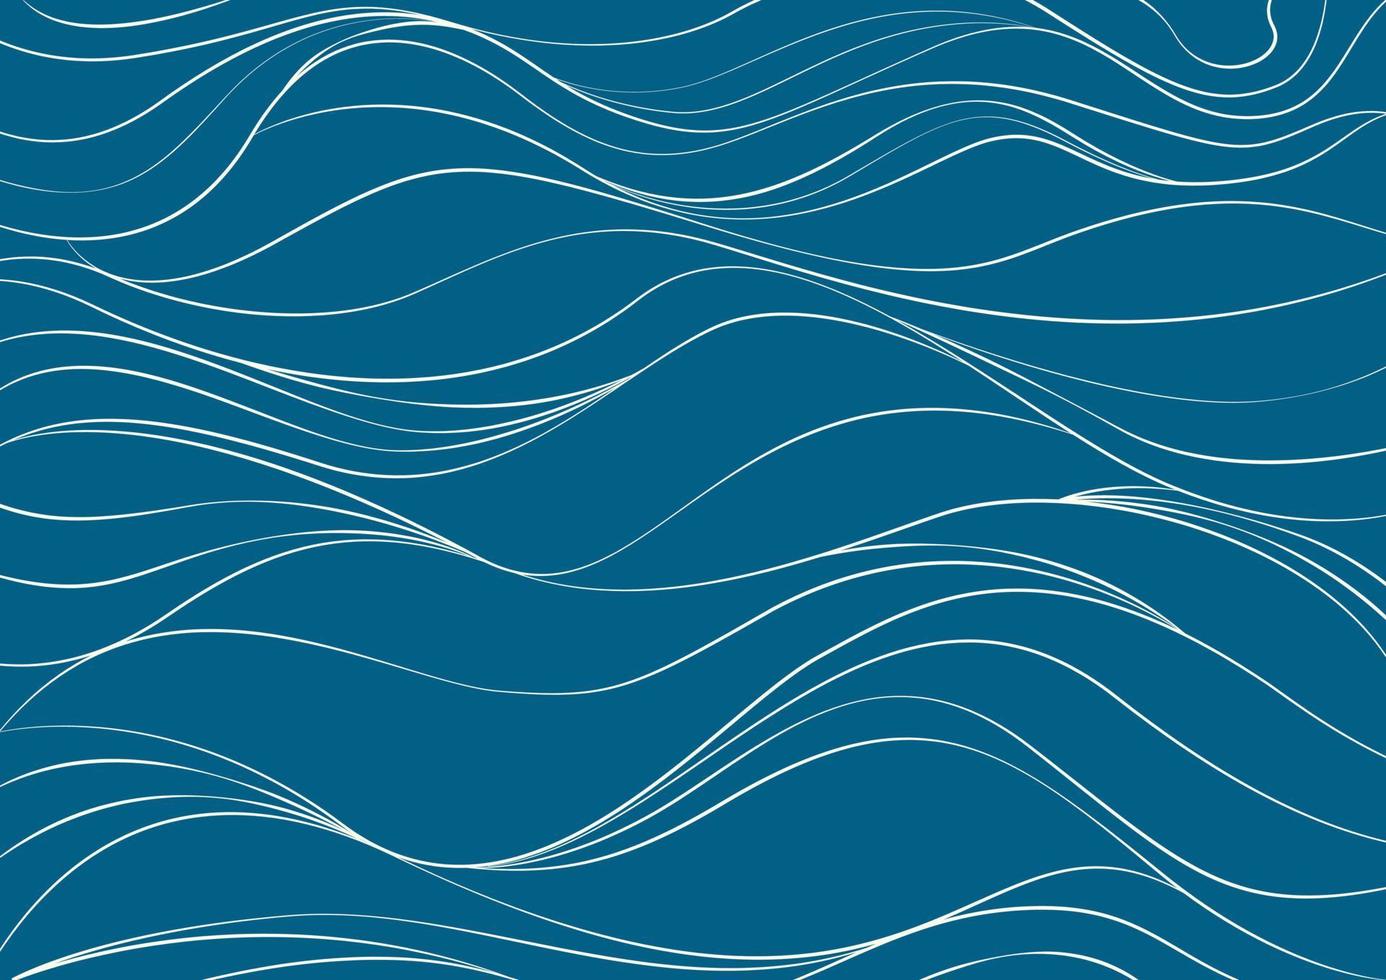 modello di sfondo texture astratta di acqua, mare, acqua, oceano, fiume o montagna. doodle linea ondulata curva lineare onda forma libera motivo ripetuto striscia ondulazione. disegno di illustrazione vettoriale piatto